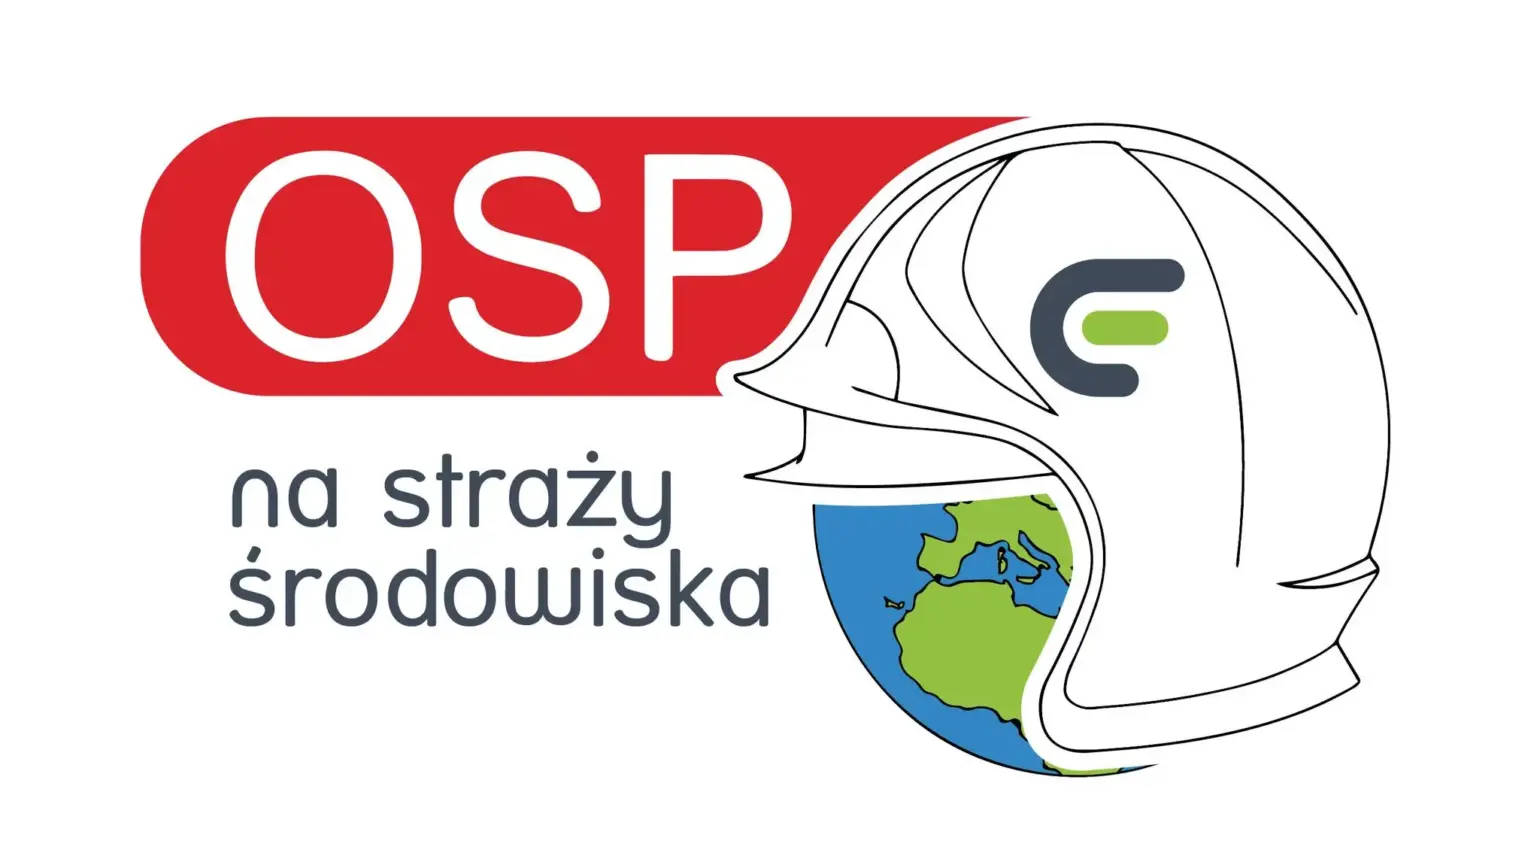 OSP na straży środowiska